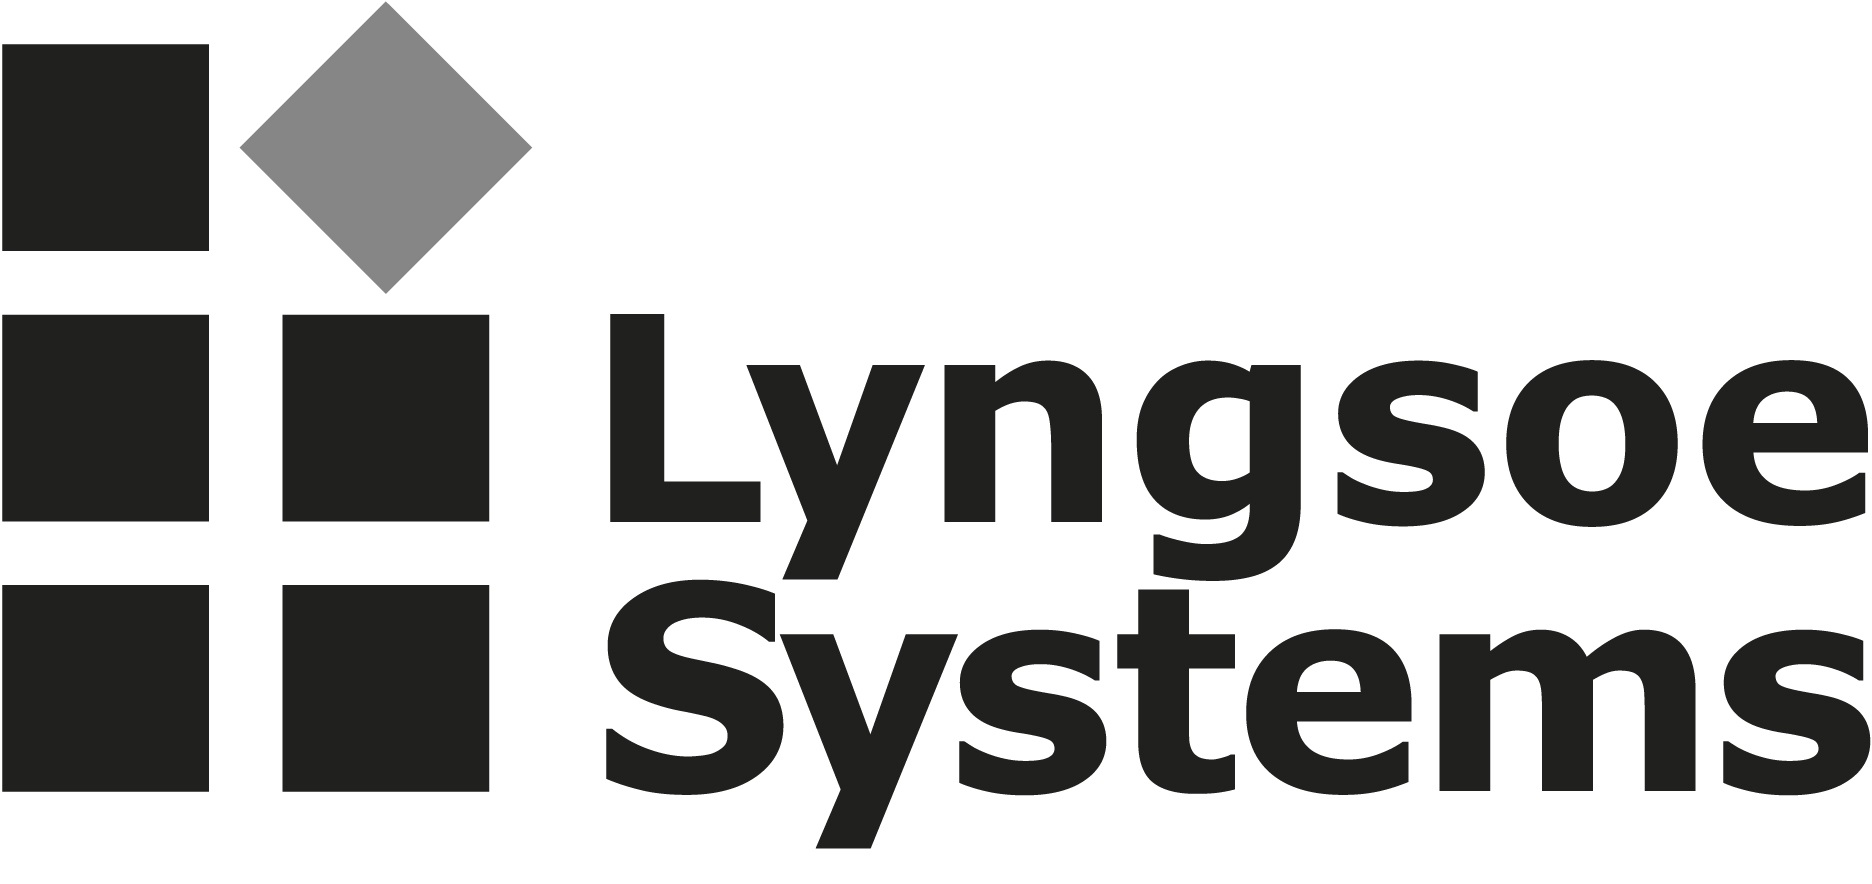 Lyngsoe Systems